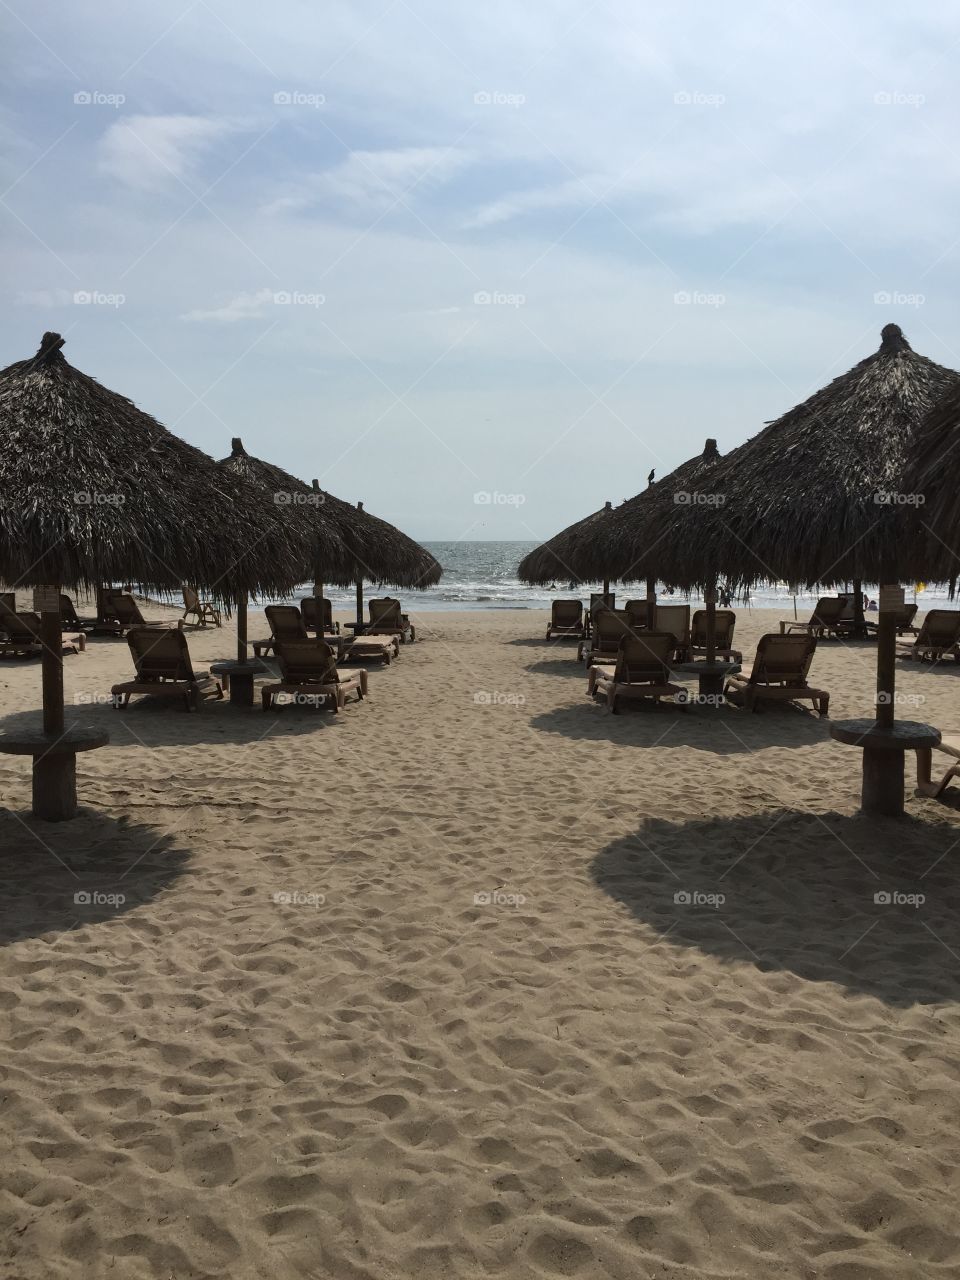 Beach Day. Mexican Beach Resort